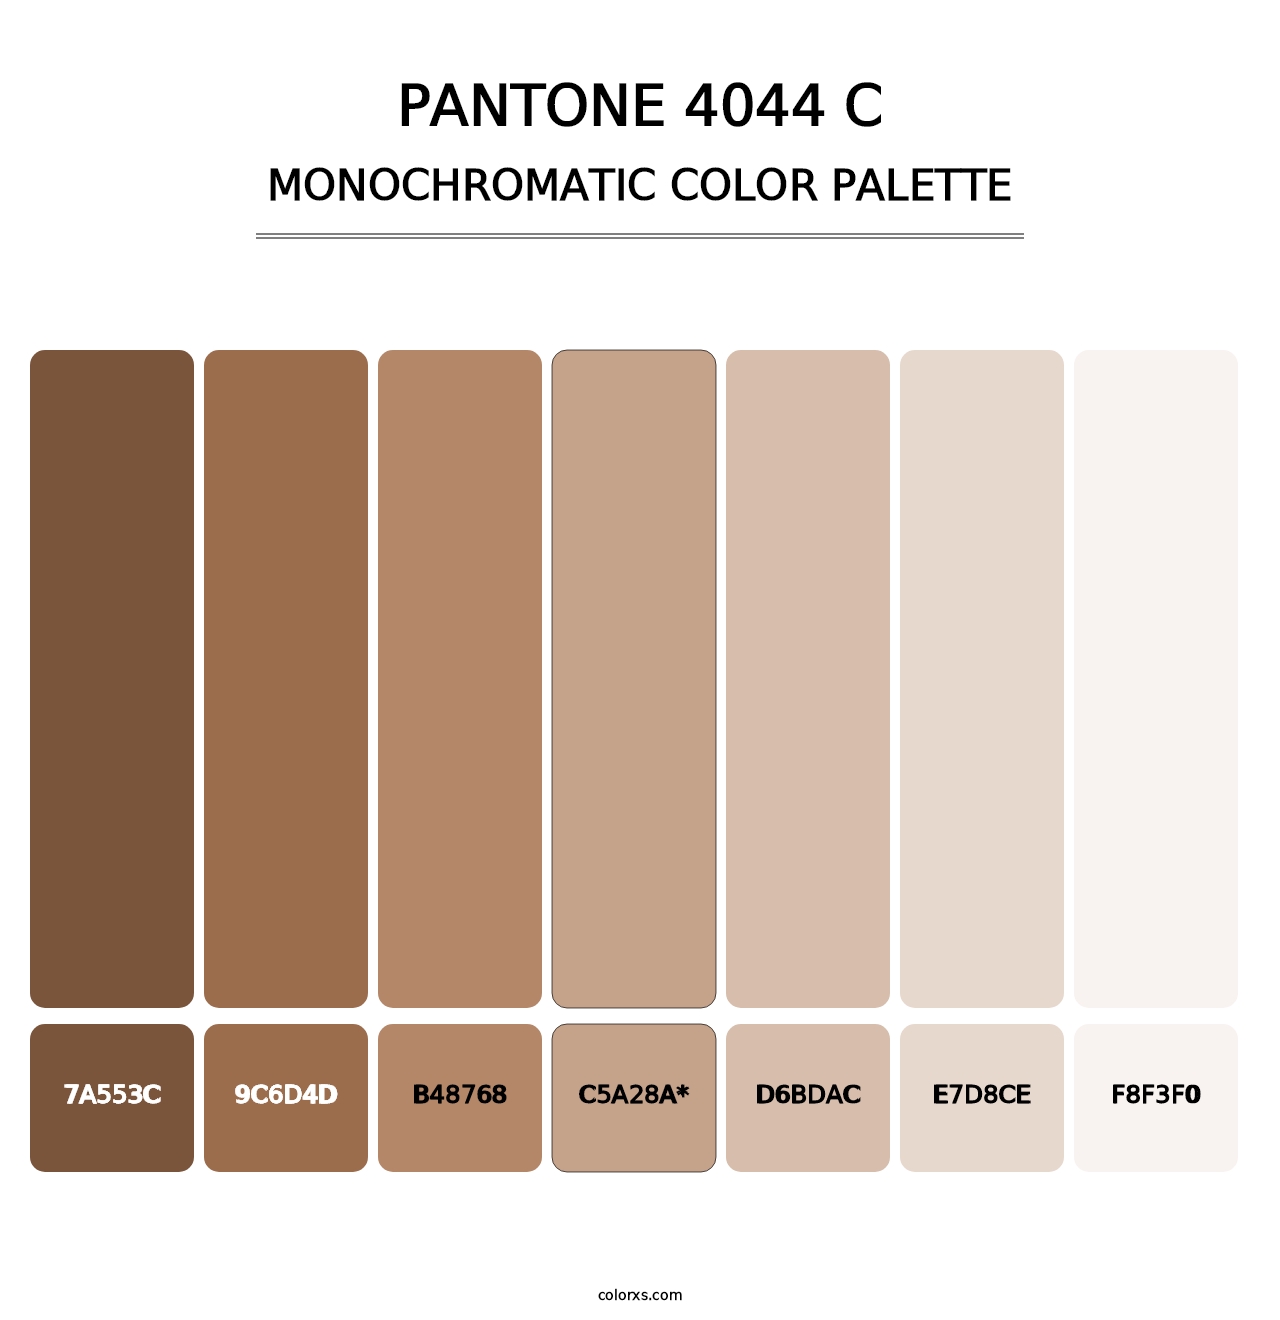 PANTONE 4044 C - Monochromatic Color Palette